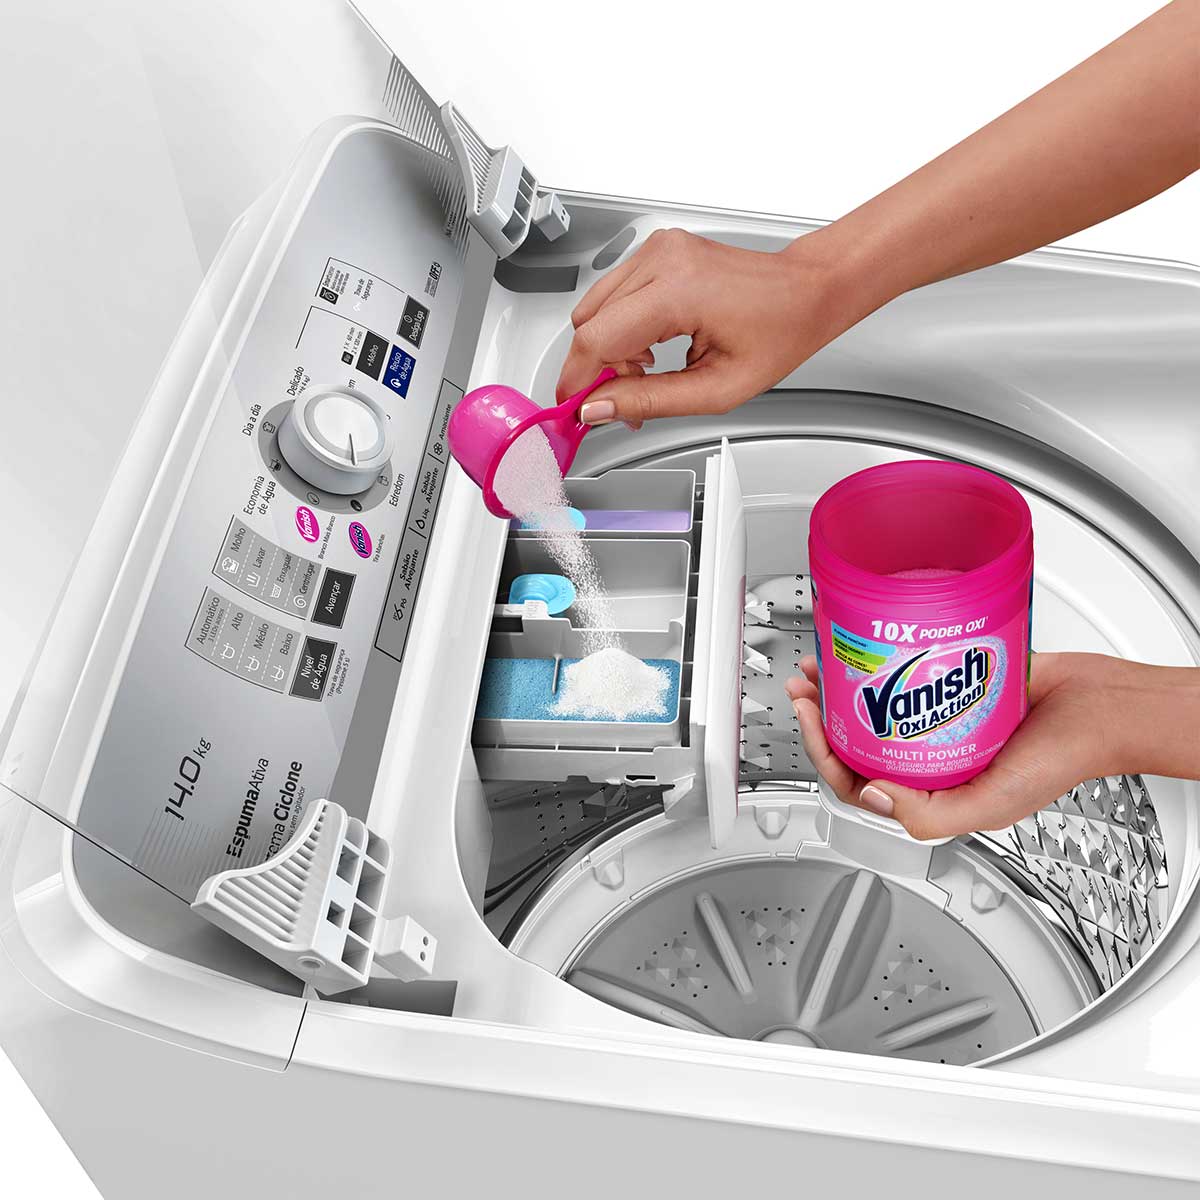 lavadora-panasonic-f140b1w-14kg-b-220v-6.jpg